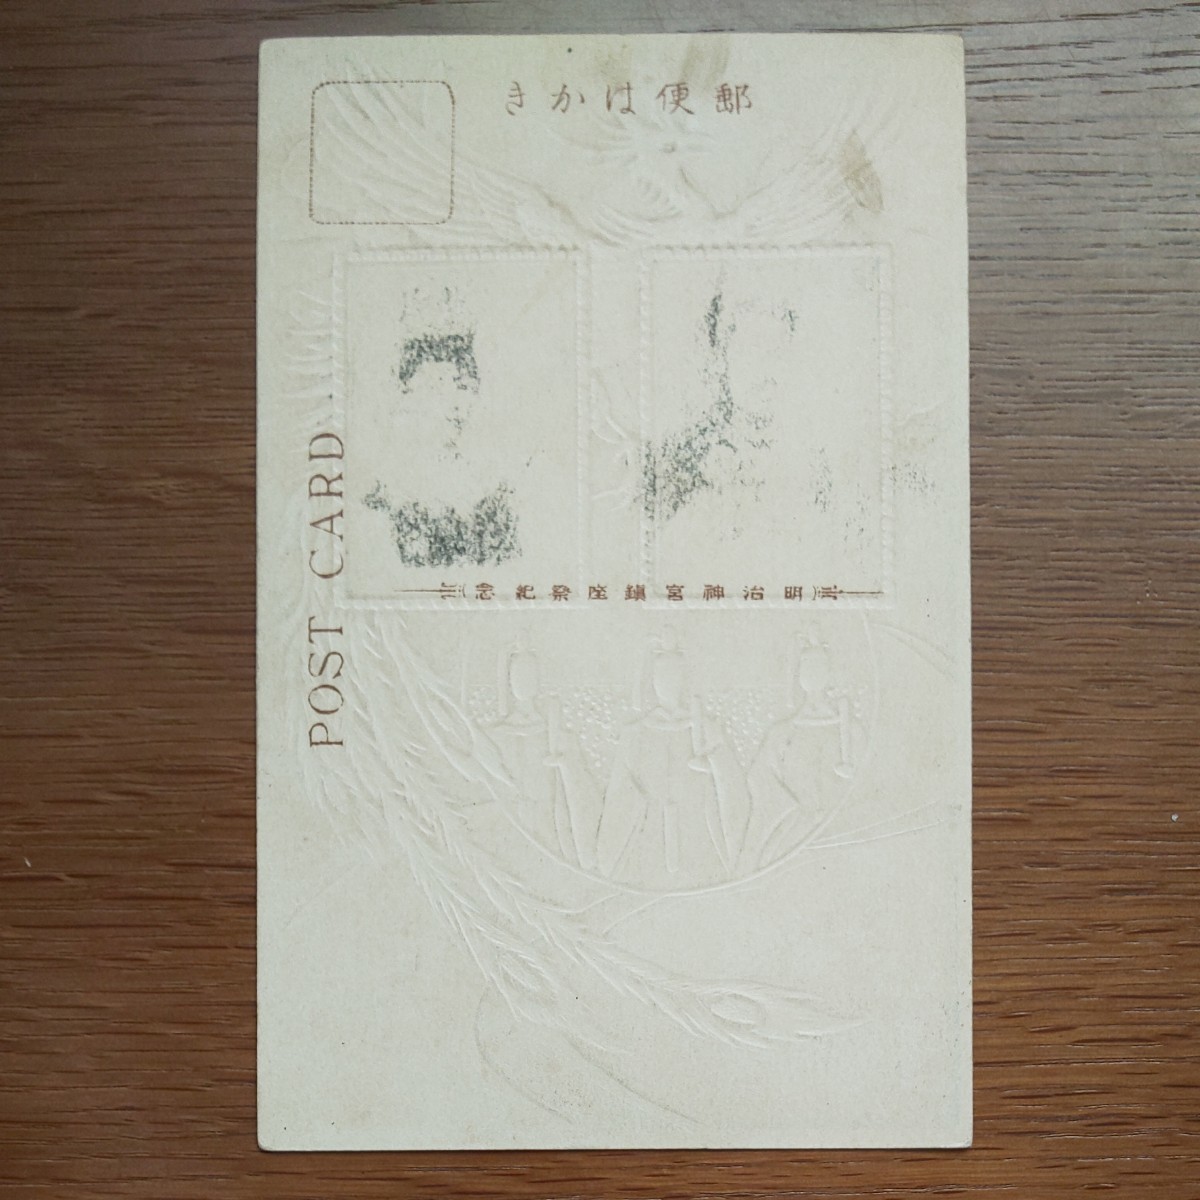 【記念切手】1920明治神宮鎮座記念 東京FDC、1959皇太子殿下ご成婚記念、1971昭和天皇皇后両陛下御訪欧記念小型シート